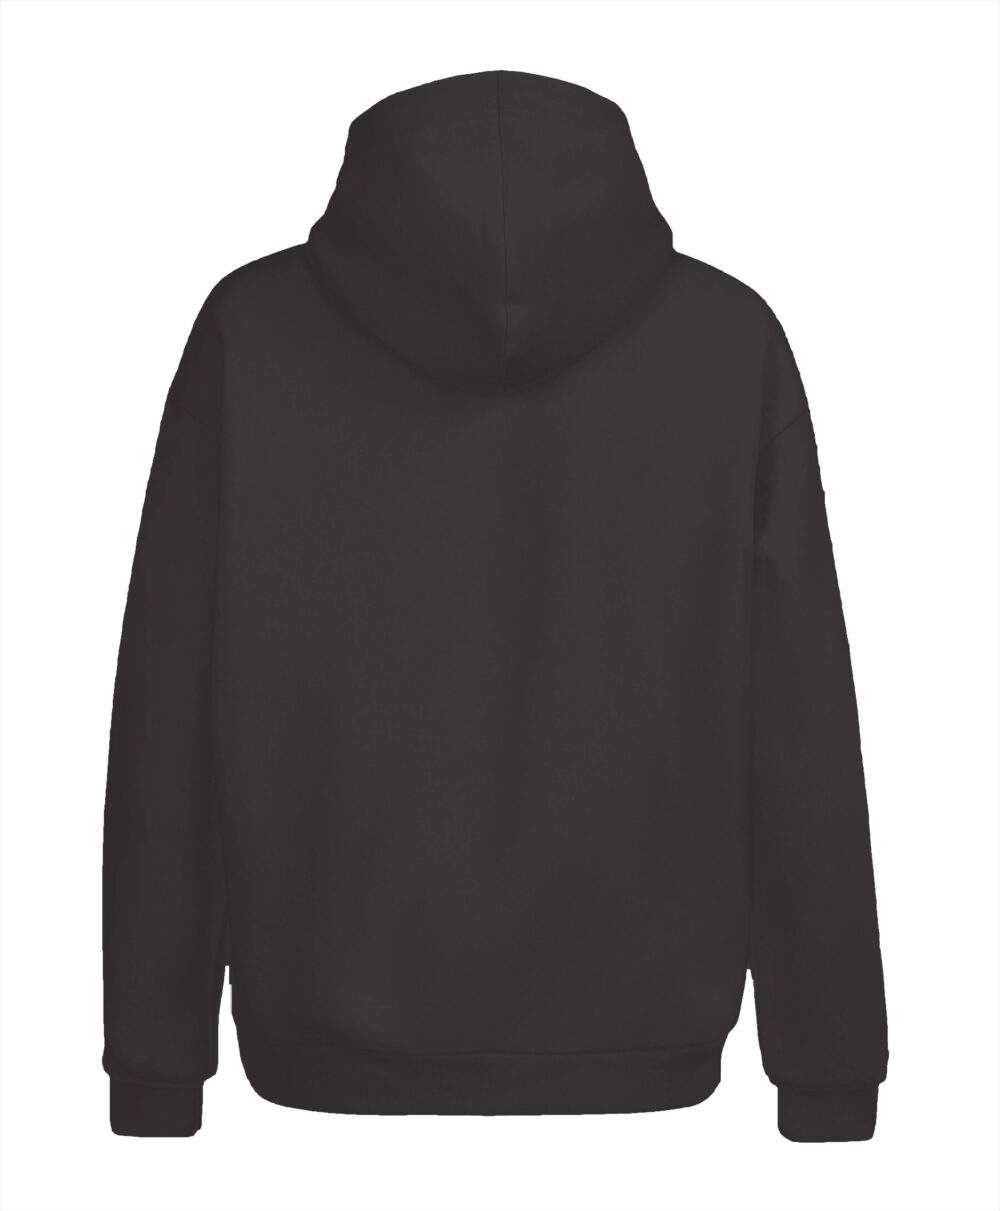 hoodie stores online